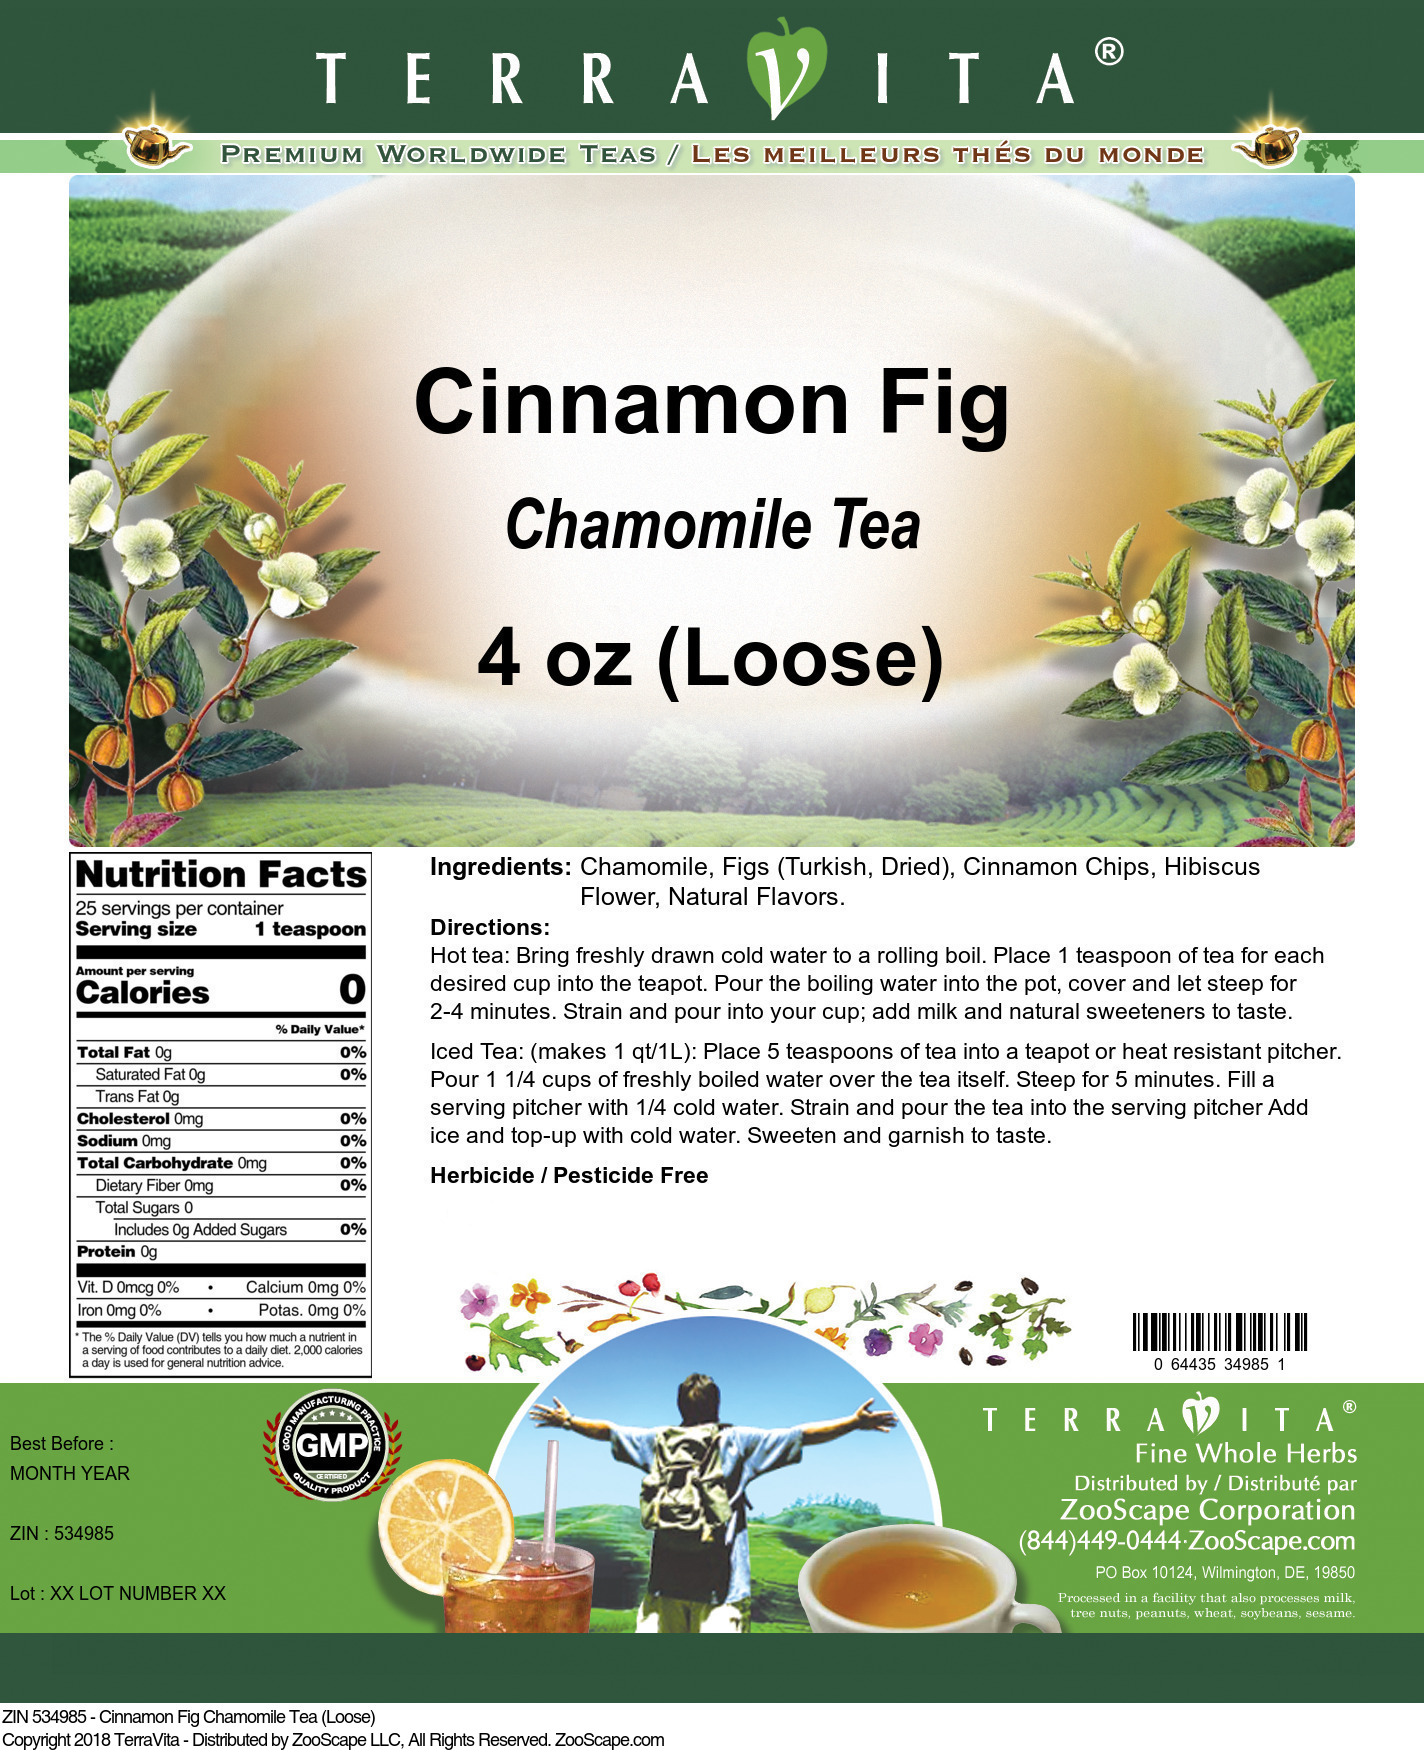 Cinnamon Fig Chamomile Tea (Loose) - Label